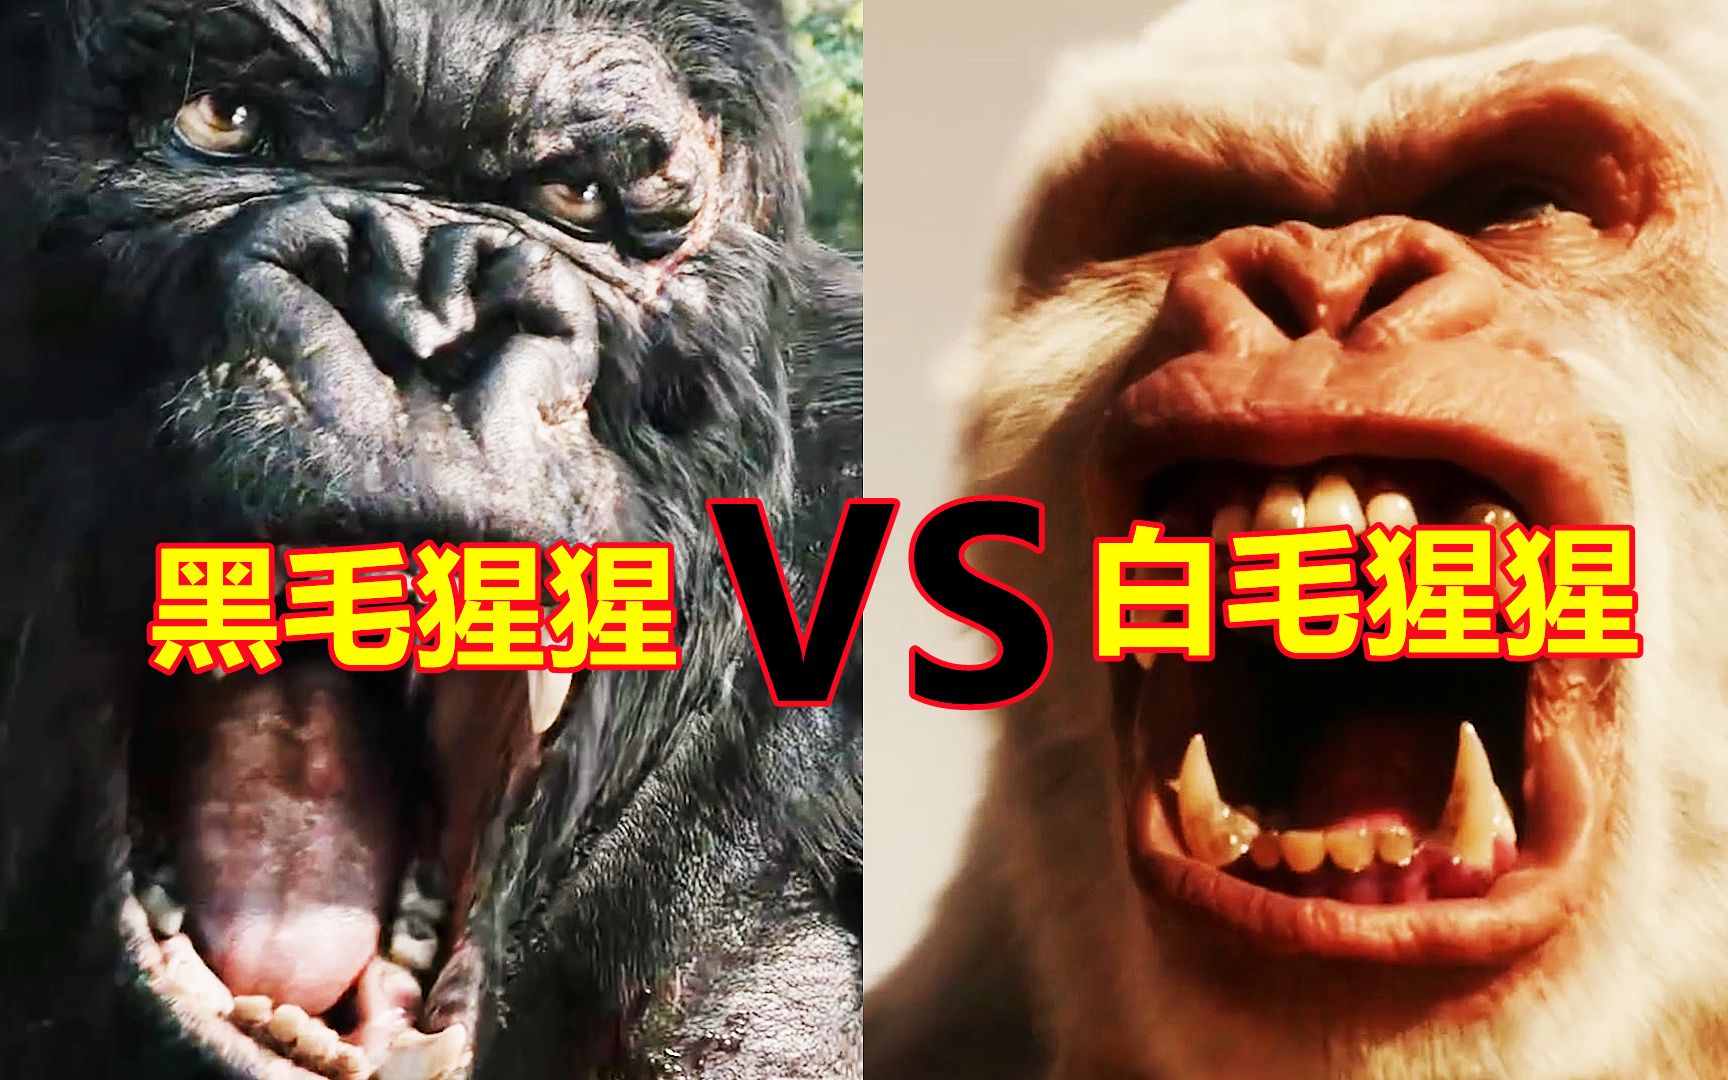 黑毛猩猩和白毛猩猩大比拼，如果它们打起来你觉得哪个胜率高？